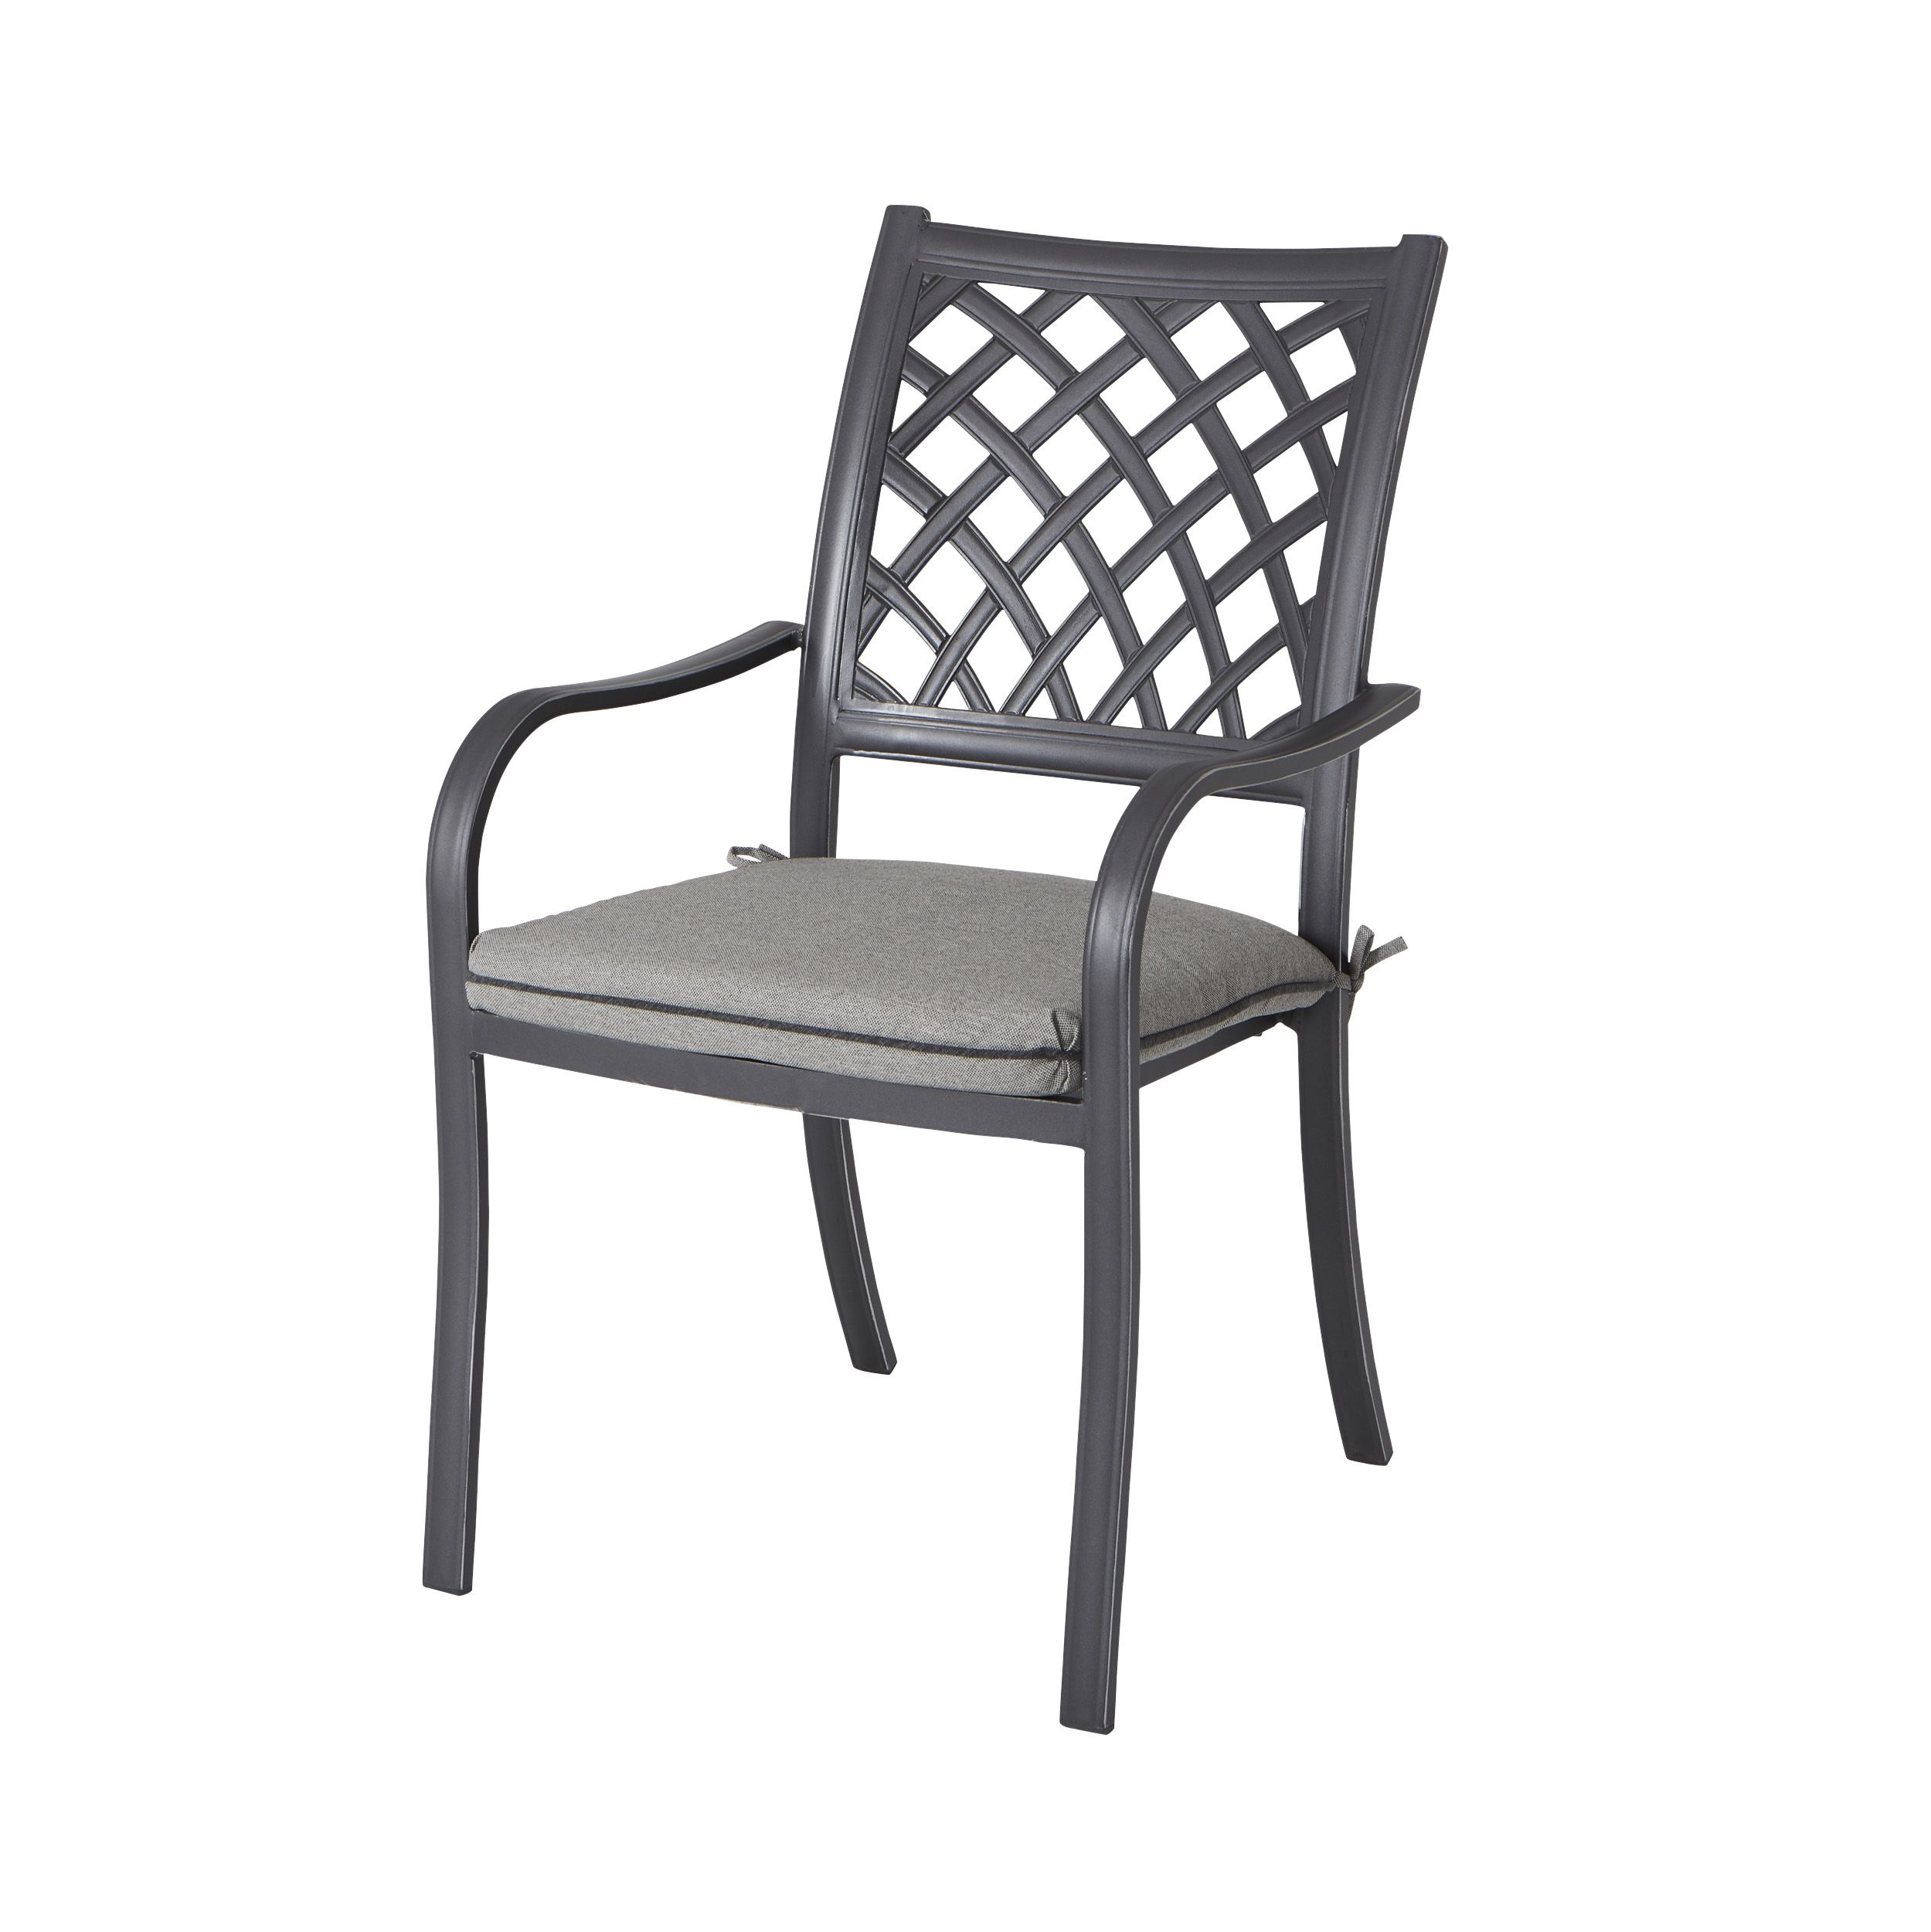 B & Q Carambole Dark grey Metal Dining Armchair Garden chairs £103.00